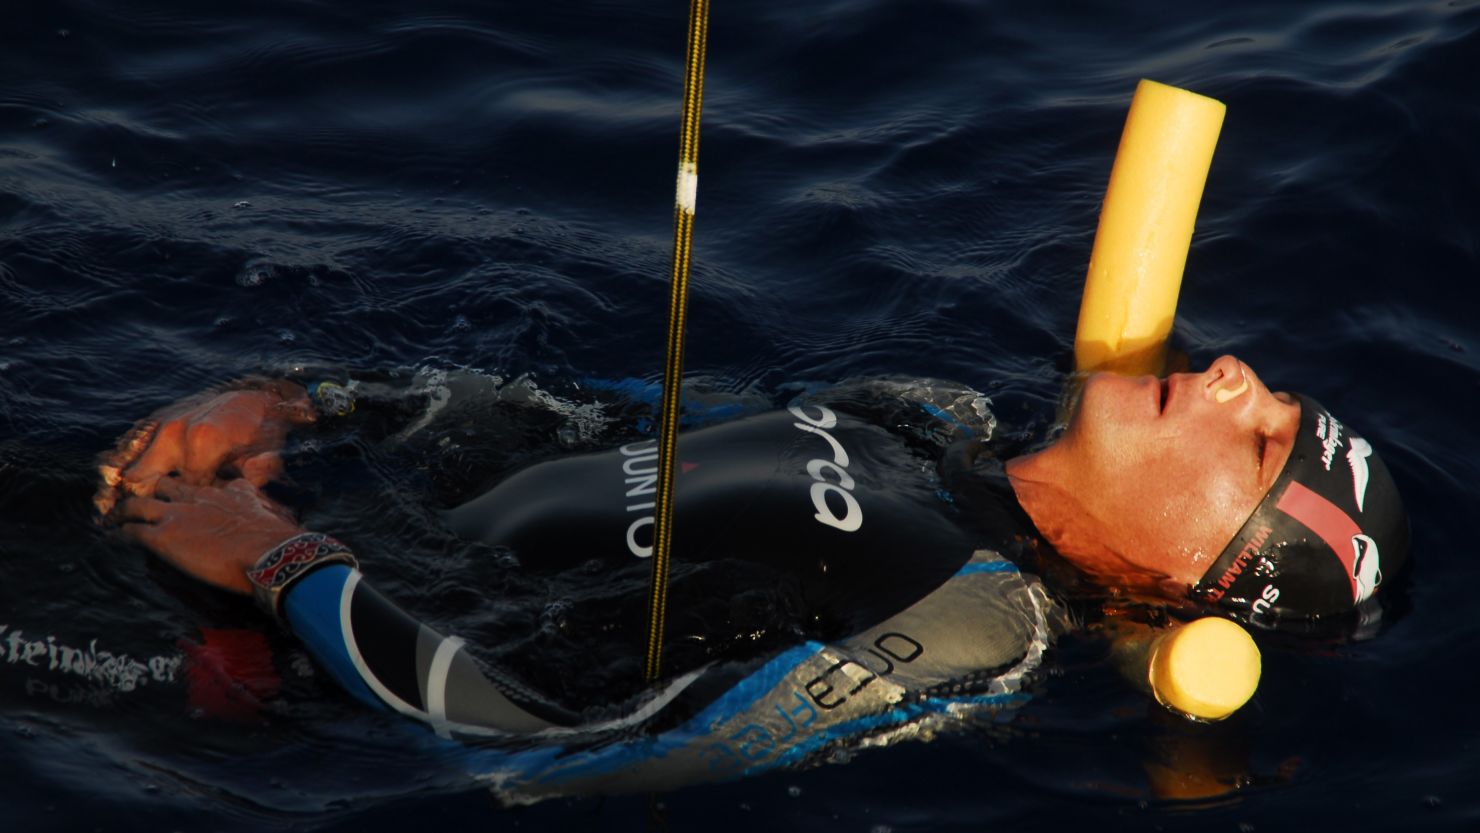 Diver William Trubridge has achieved his 17th world record.